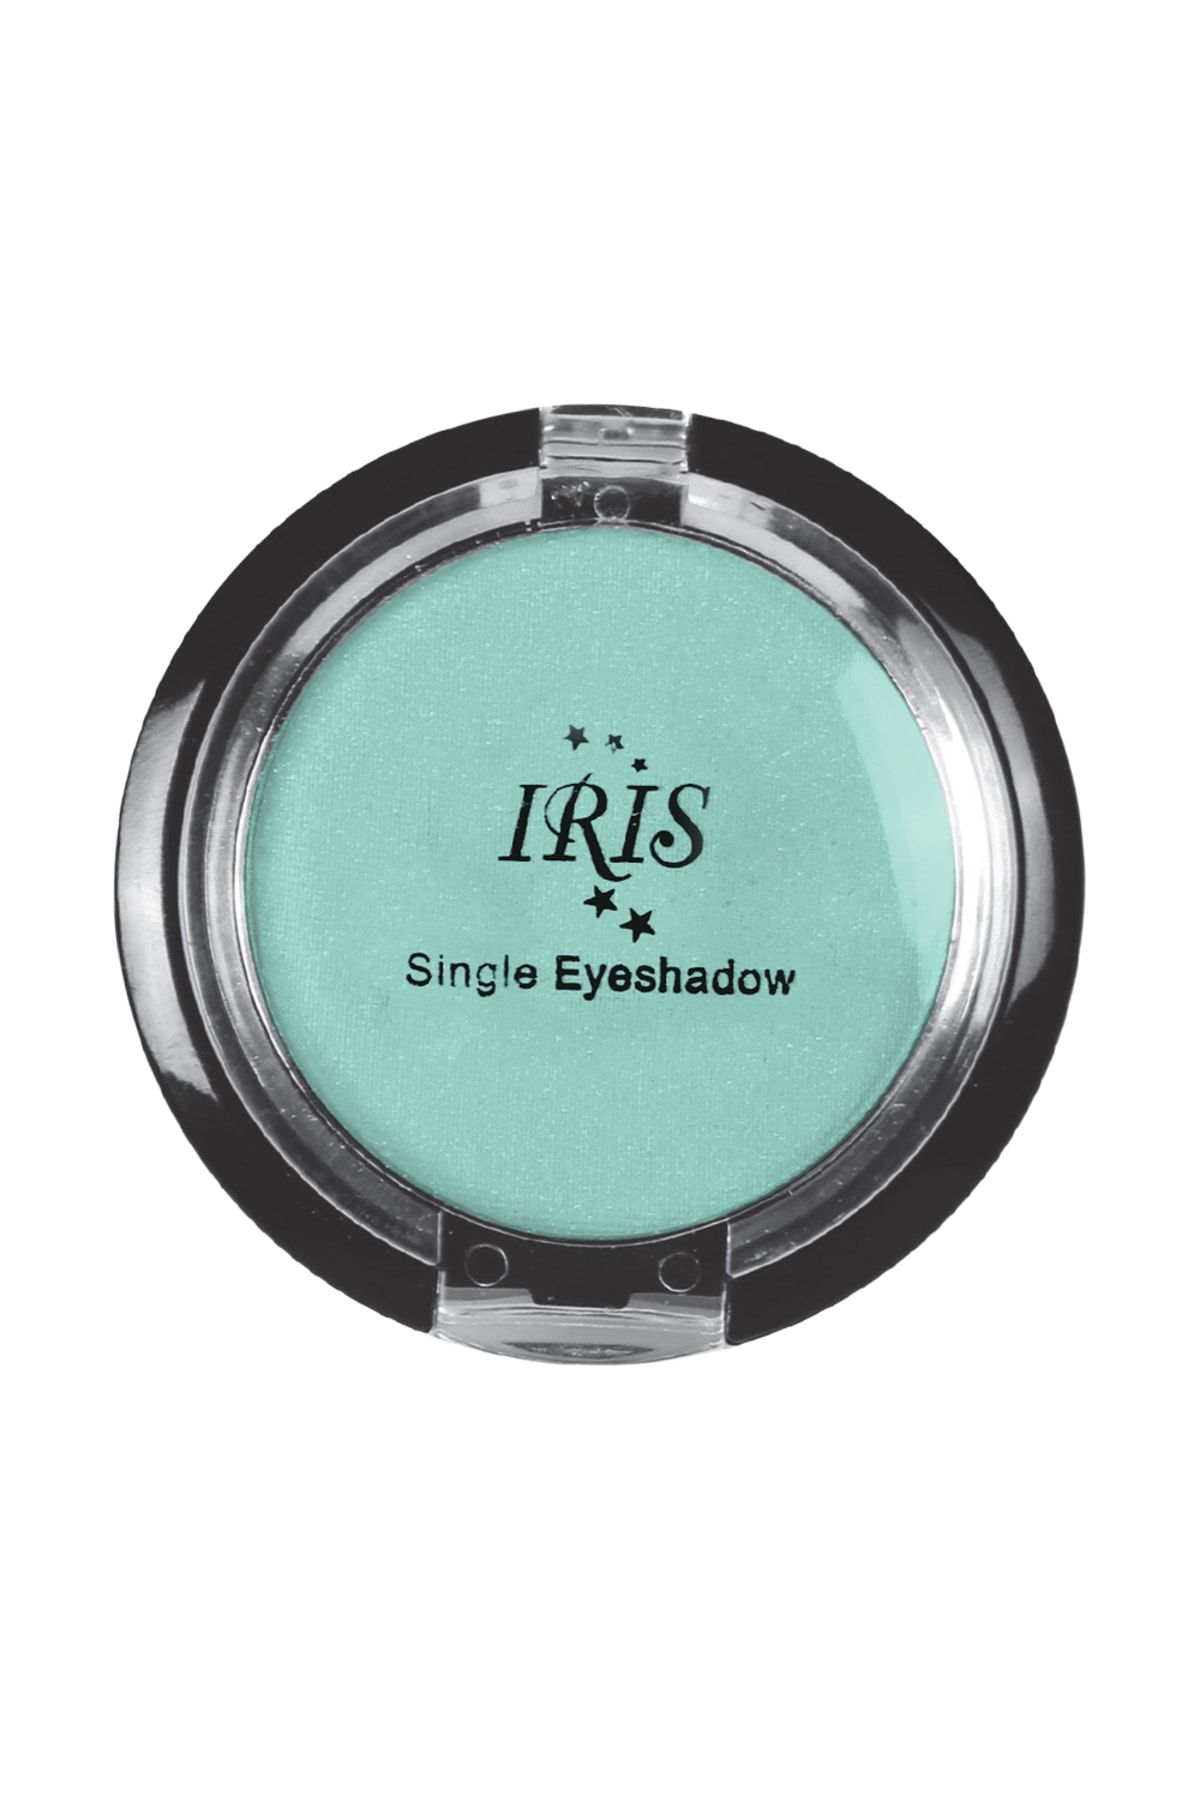 IRIS Göz Farı - Single Eyeshadow 005 8699195992720